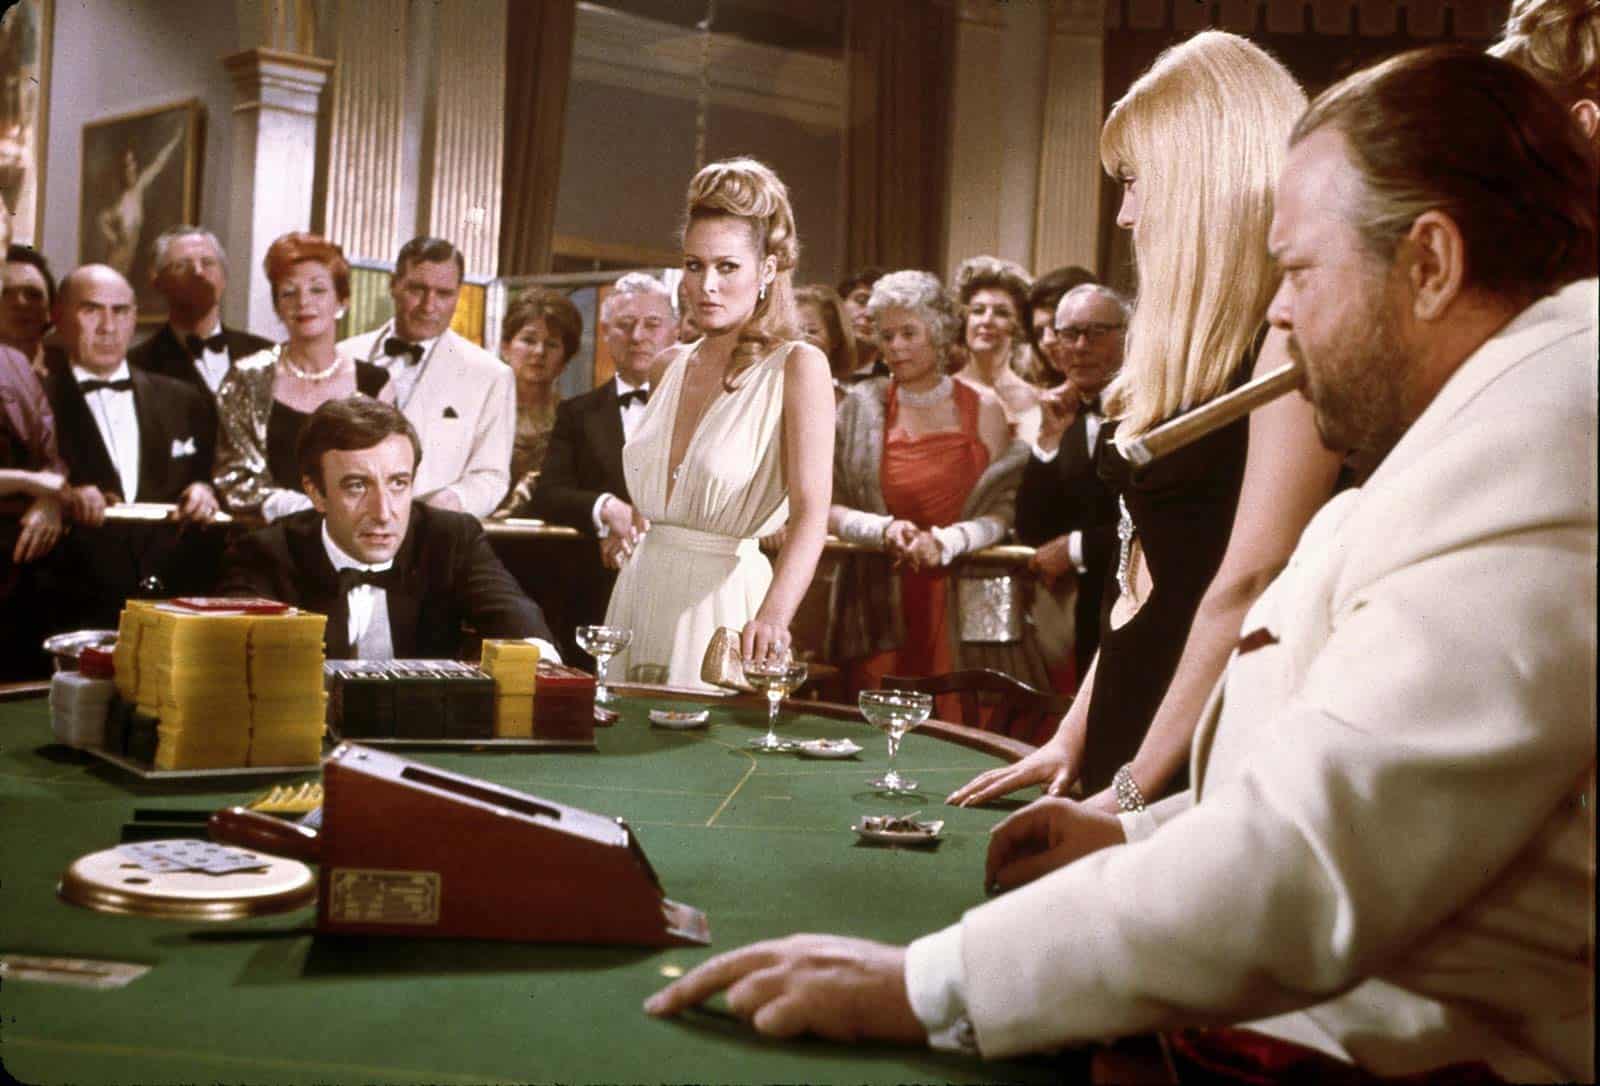 hollywood casino table games david gooch